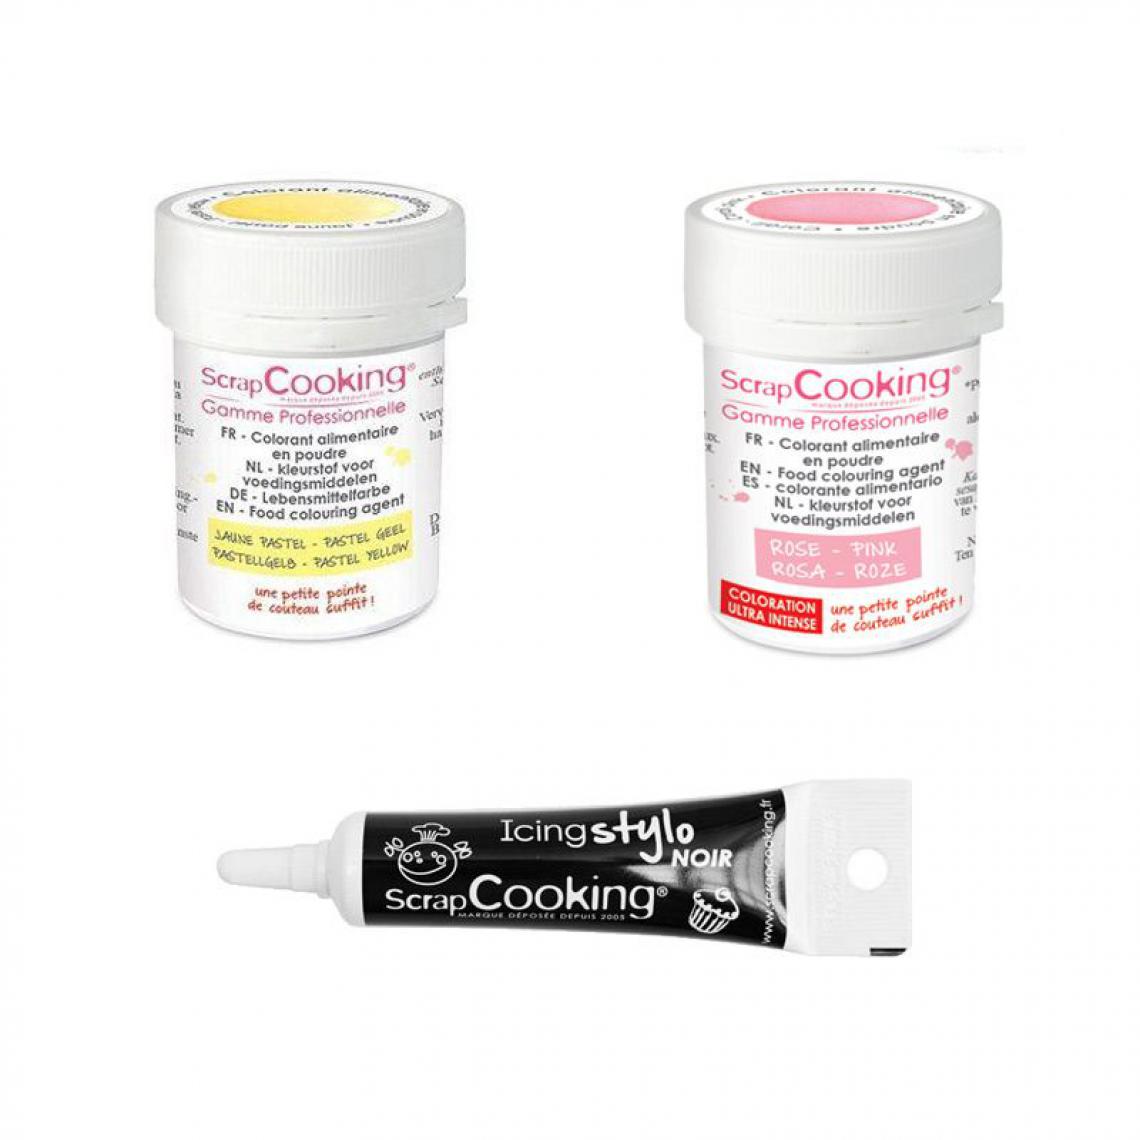 Scrapcooking - 2 colorants alimentaires rose poudré-jaune pastel + Stylo glaçage noir - Kits créatifs